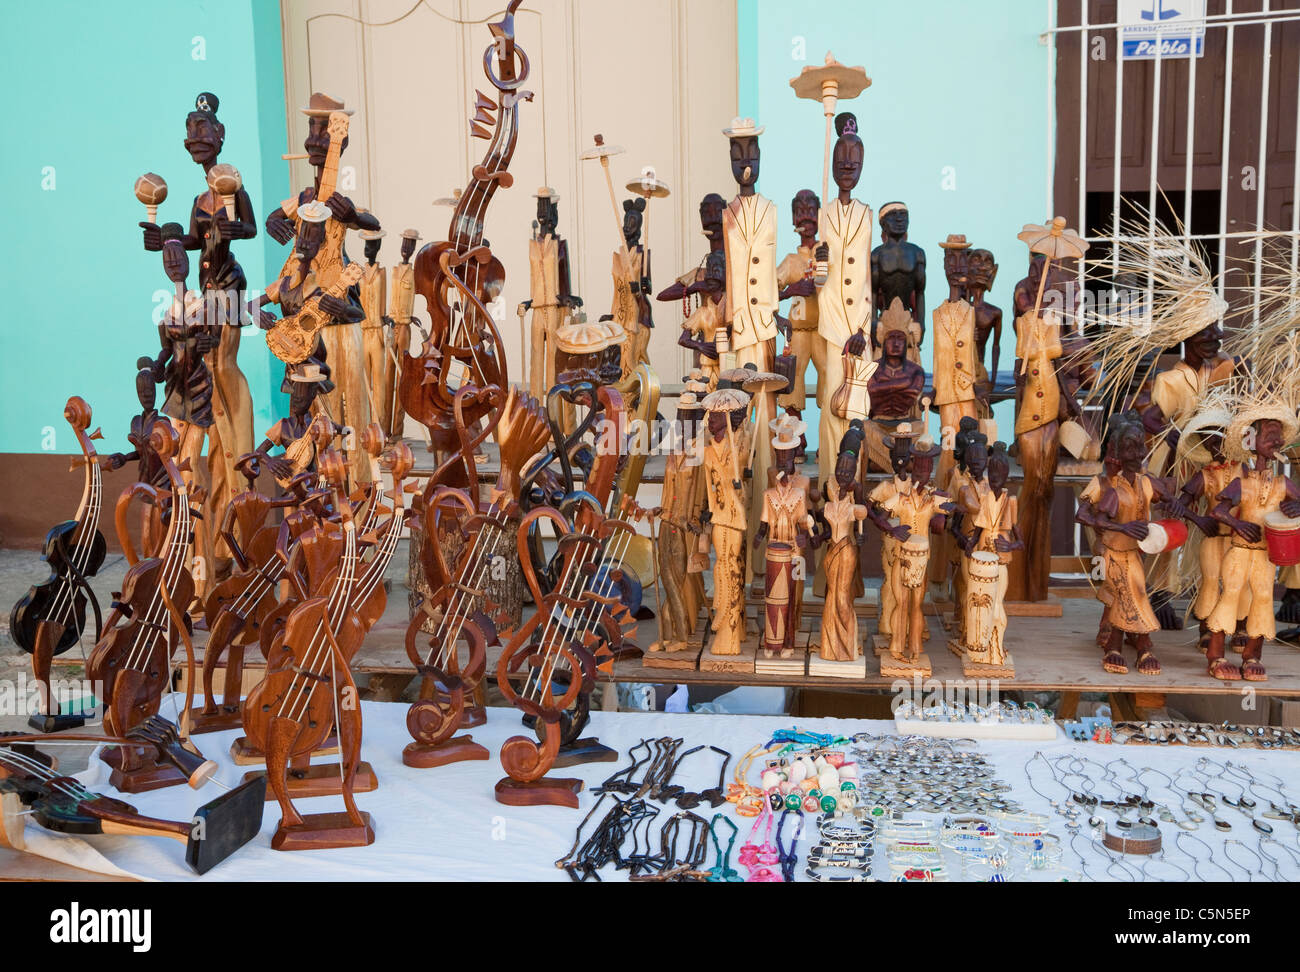 Kuba, Trinidad. Holzschnitzereien Kunsthandwerk-Markt. Stockfoto